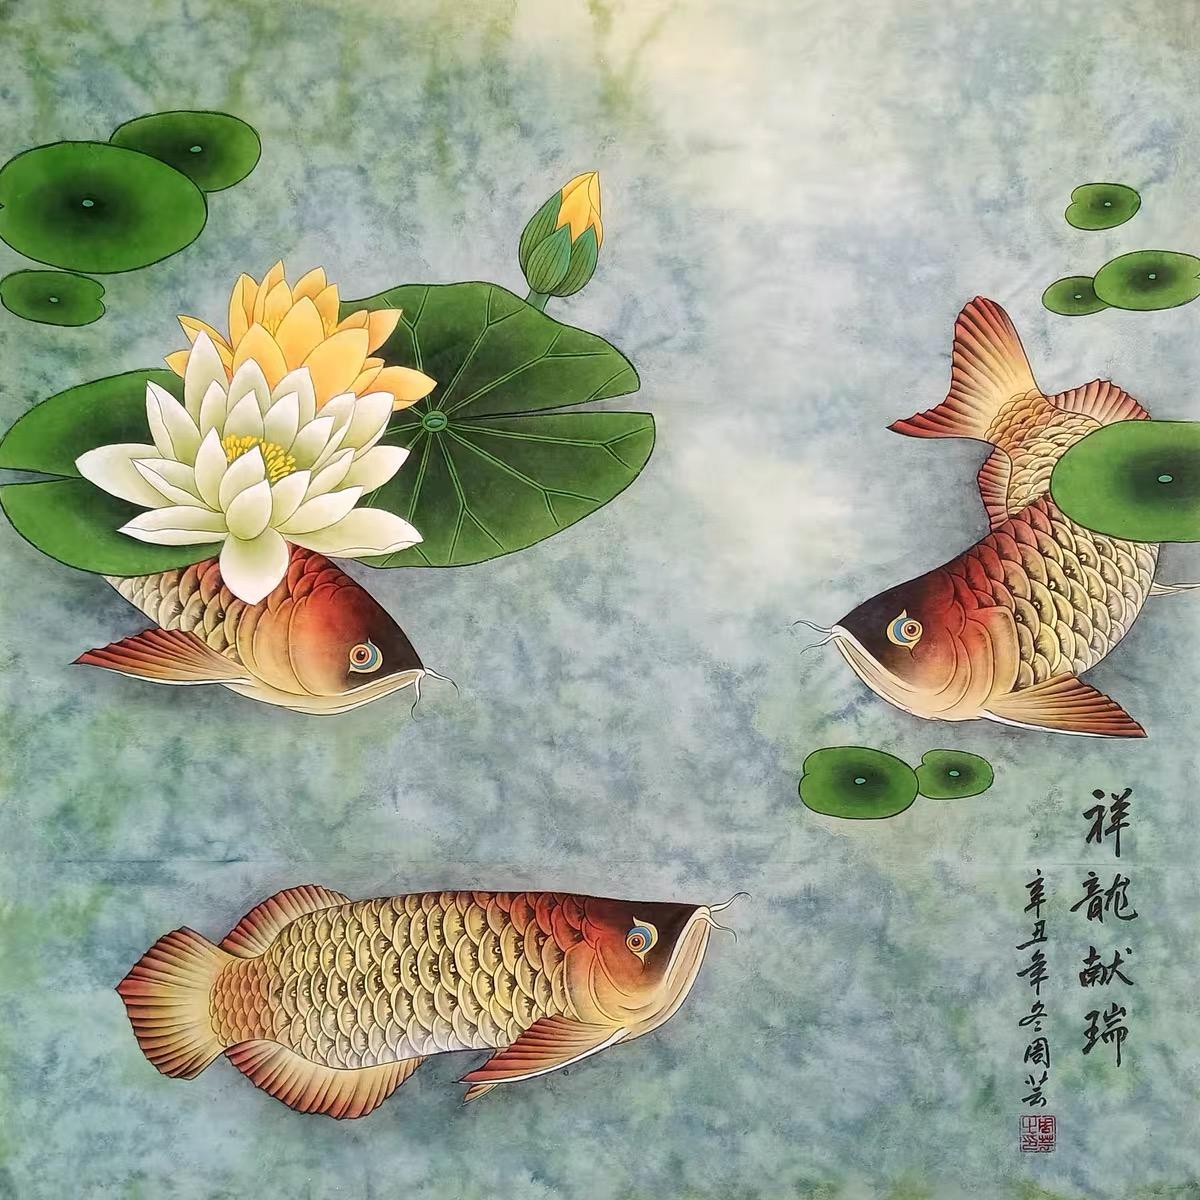 Diese chinesische klassische Tusche Hand Malerei Auspicious Fische Lotusblumen ist mit sehr guter Bedeutung.

In der chinesischen Kultur symbolisieren Fische Reichtum, Wohlstand und Glück. Die Darstellung von anmutig schwimmenden Fischen auf dem